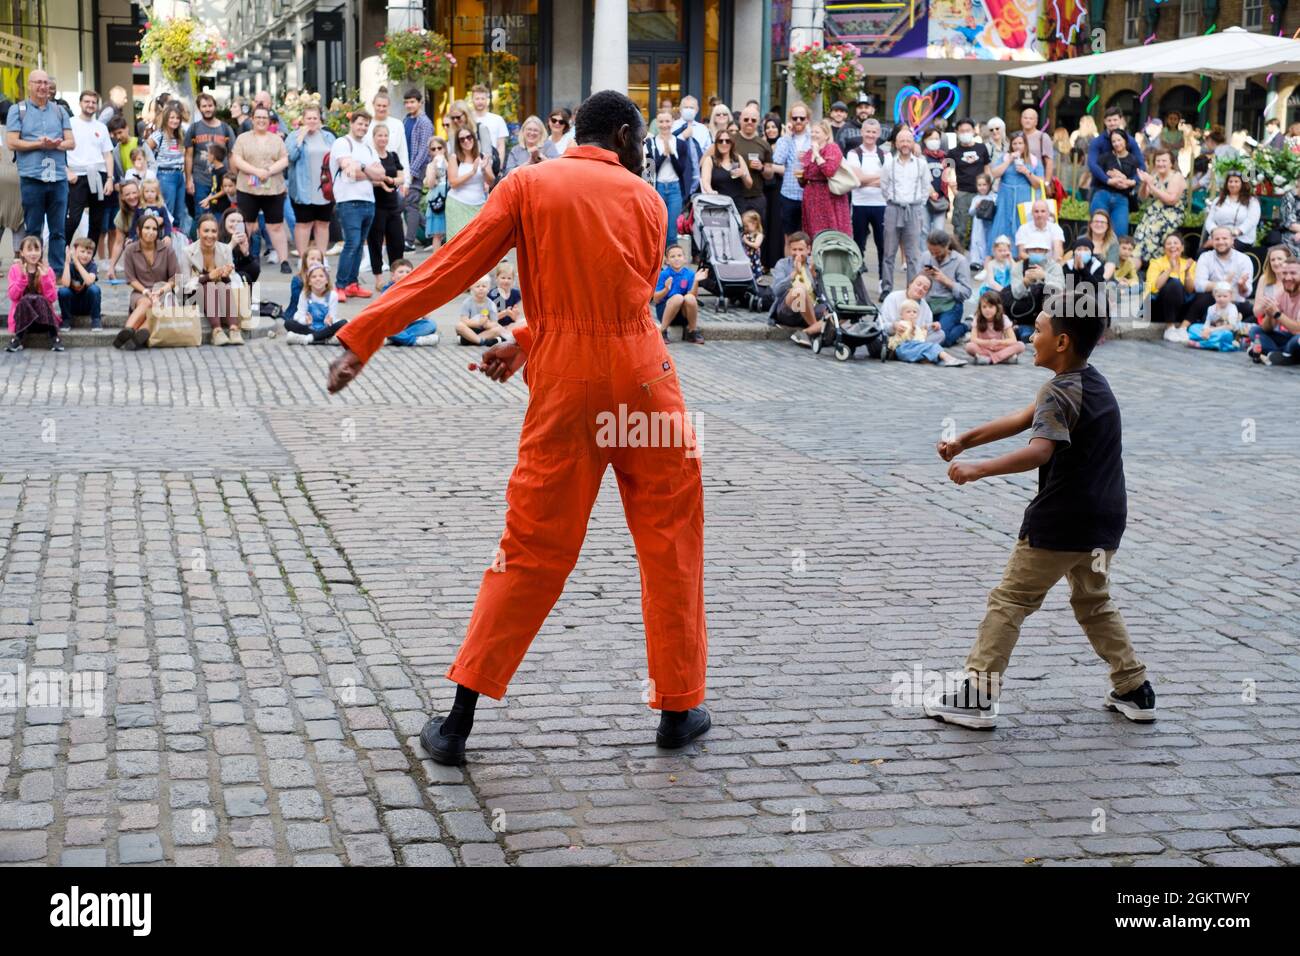 Un animatore di strada o un artista di strada si esibisce con un bambino, selezionato dalla folla che guarda, ed entrambi ballano il filo interdentale Foto Stock